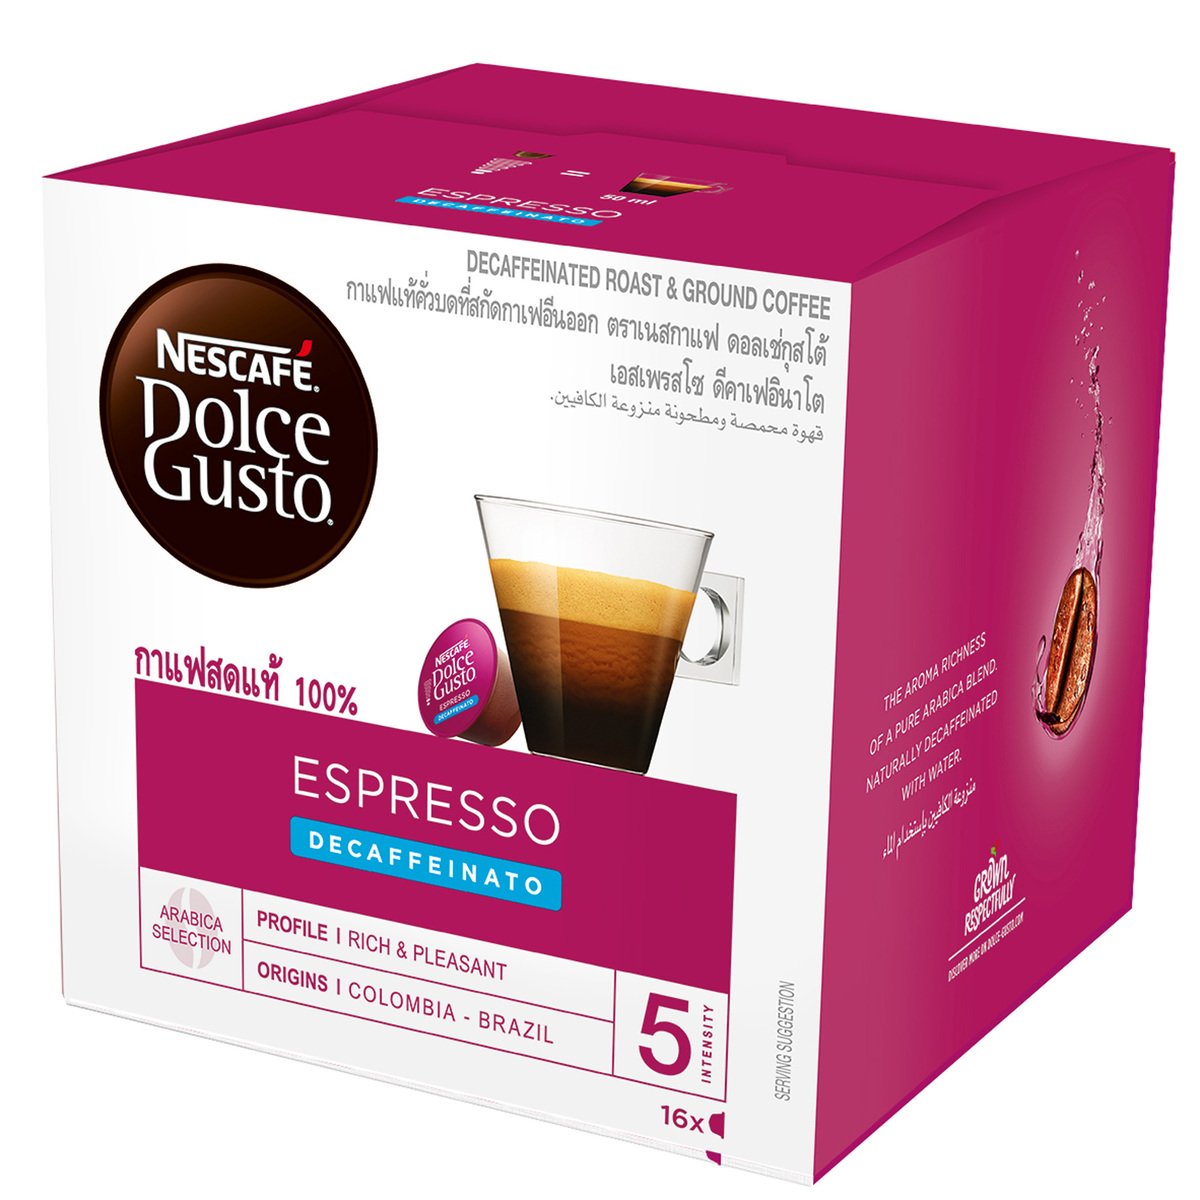 Nescafe Dolce Gusto Espresso Decaffeinato Coffee Capsules 16 pcs